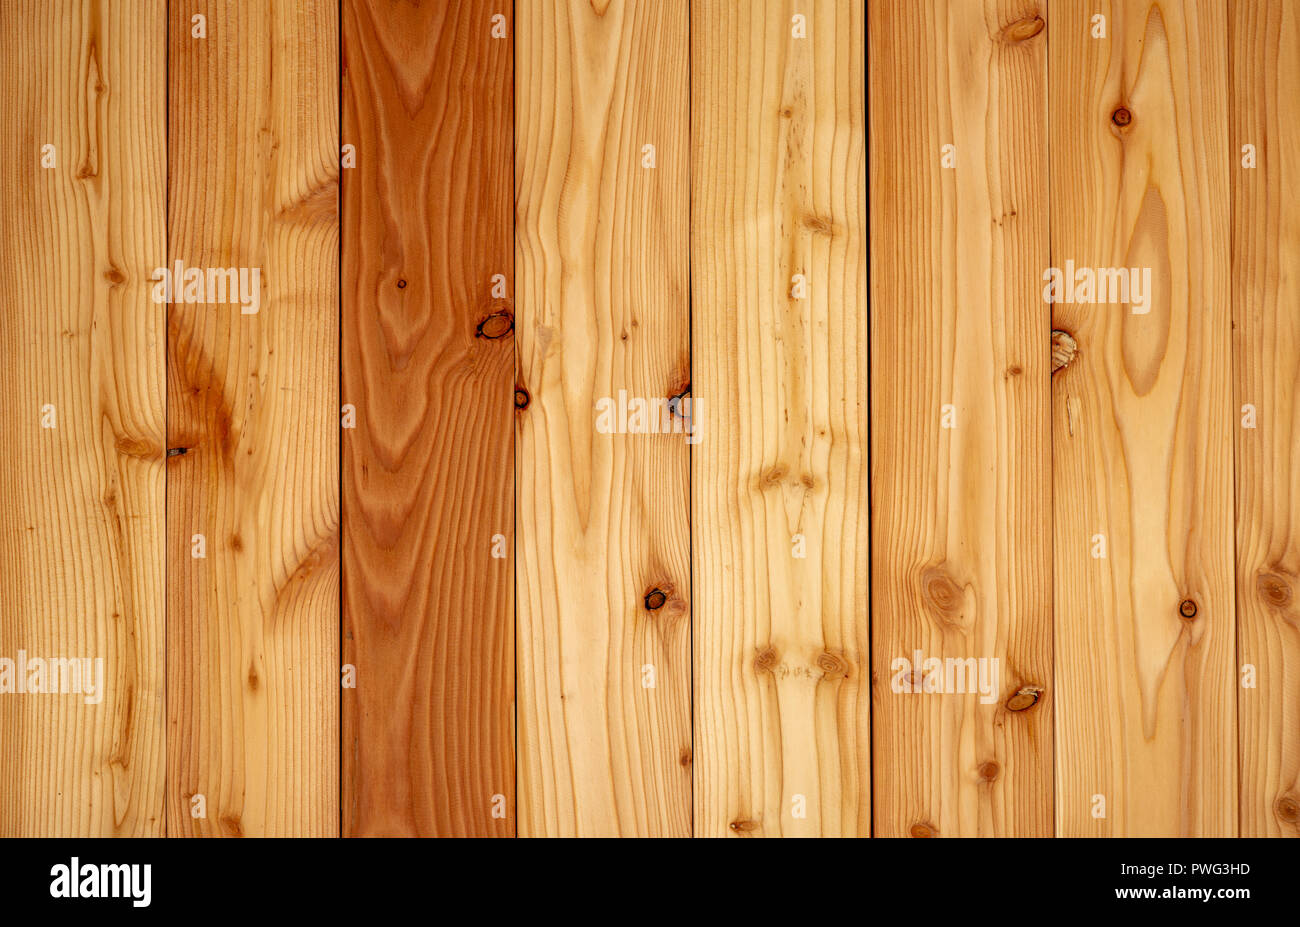 Mẫu gỗ nền texture: Bạn đang tìm kiếm những mẫu gỗ nền với hiệu ứng texture ấn tượng? Hãy xem ngay hình ảnh liên quan và cảm nhận vẻ đẹp của những mảng gỗ tự nhiên được thiết kế với độ chi tiết tinh xảo. Bạn sẽ không thể rời mắt khỏi những chi tiết đặc trưng của từng loại gỗ.